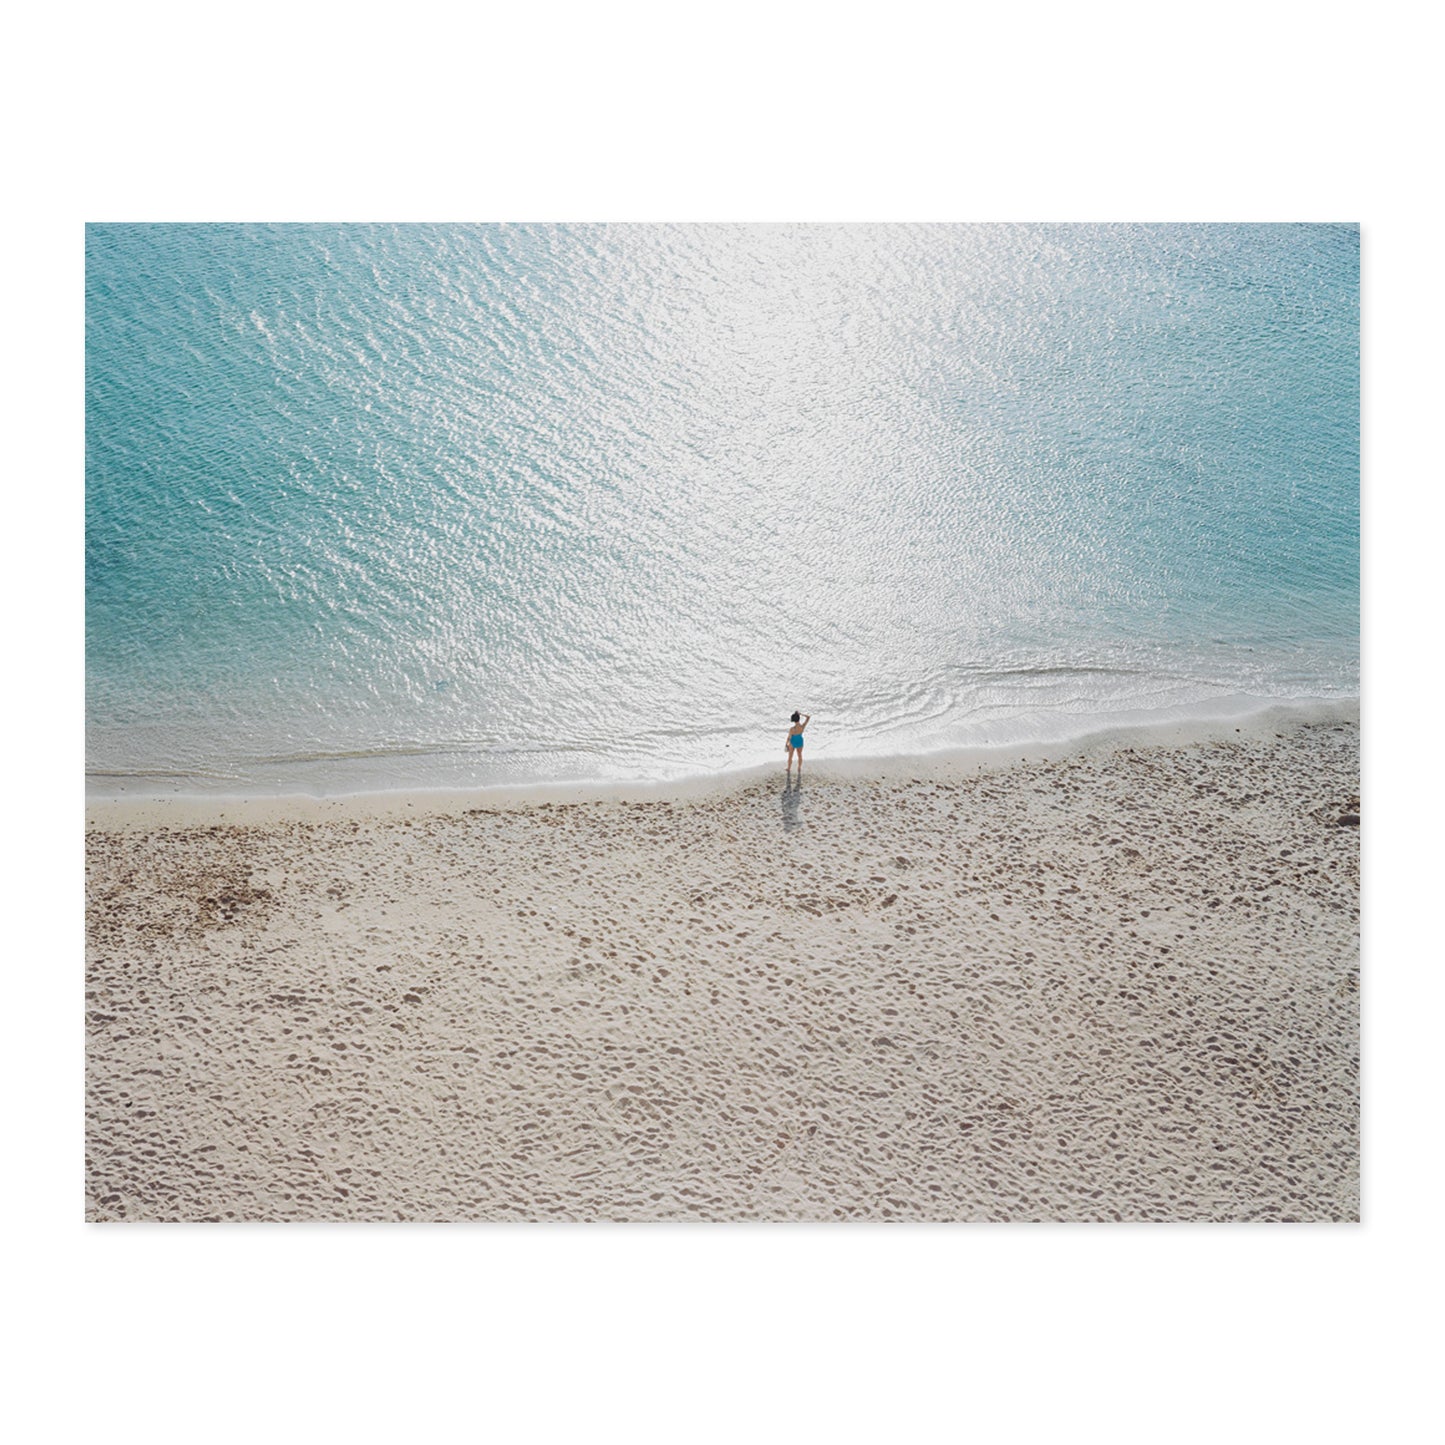 On the Beach by Richard Misrach